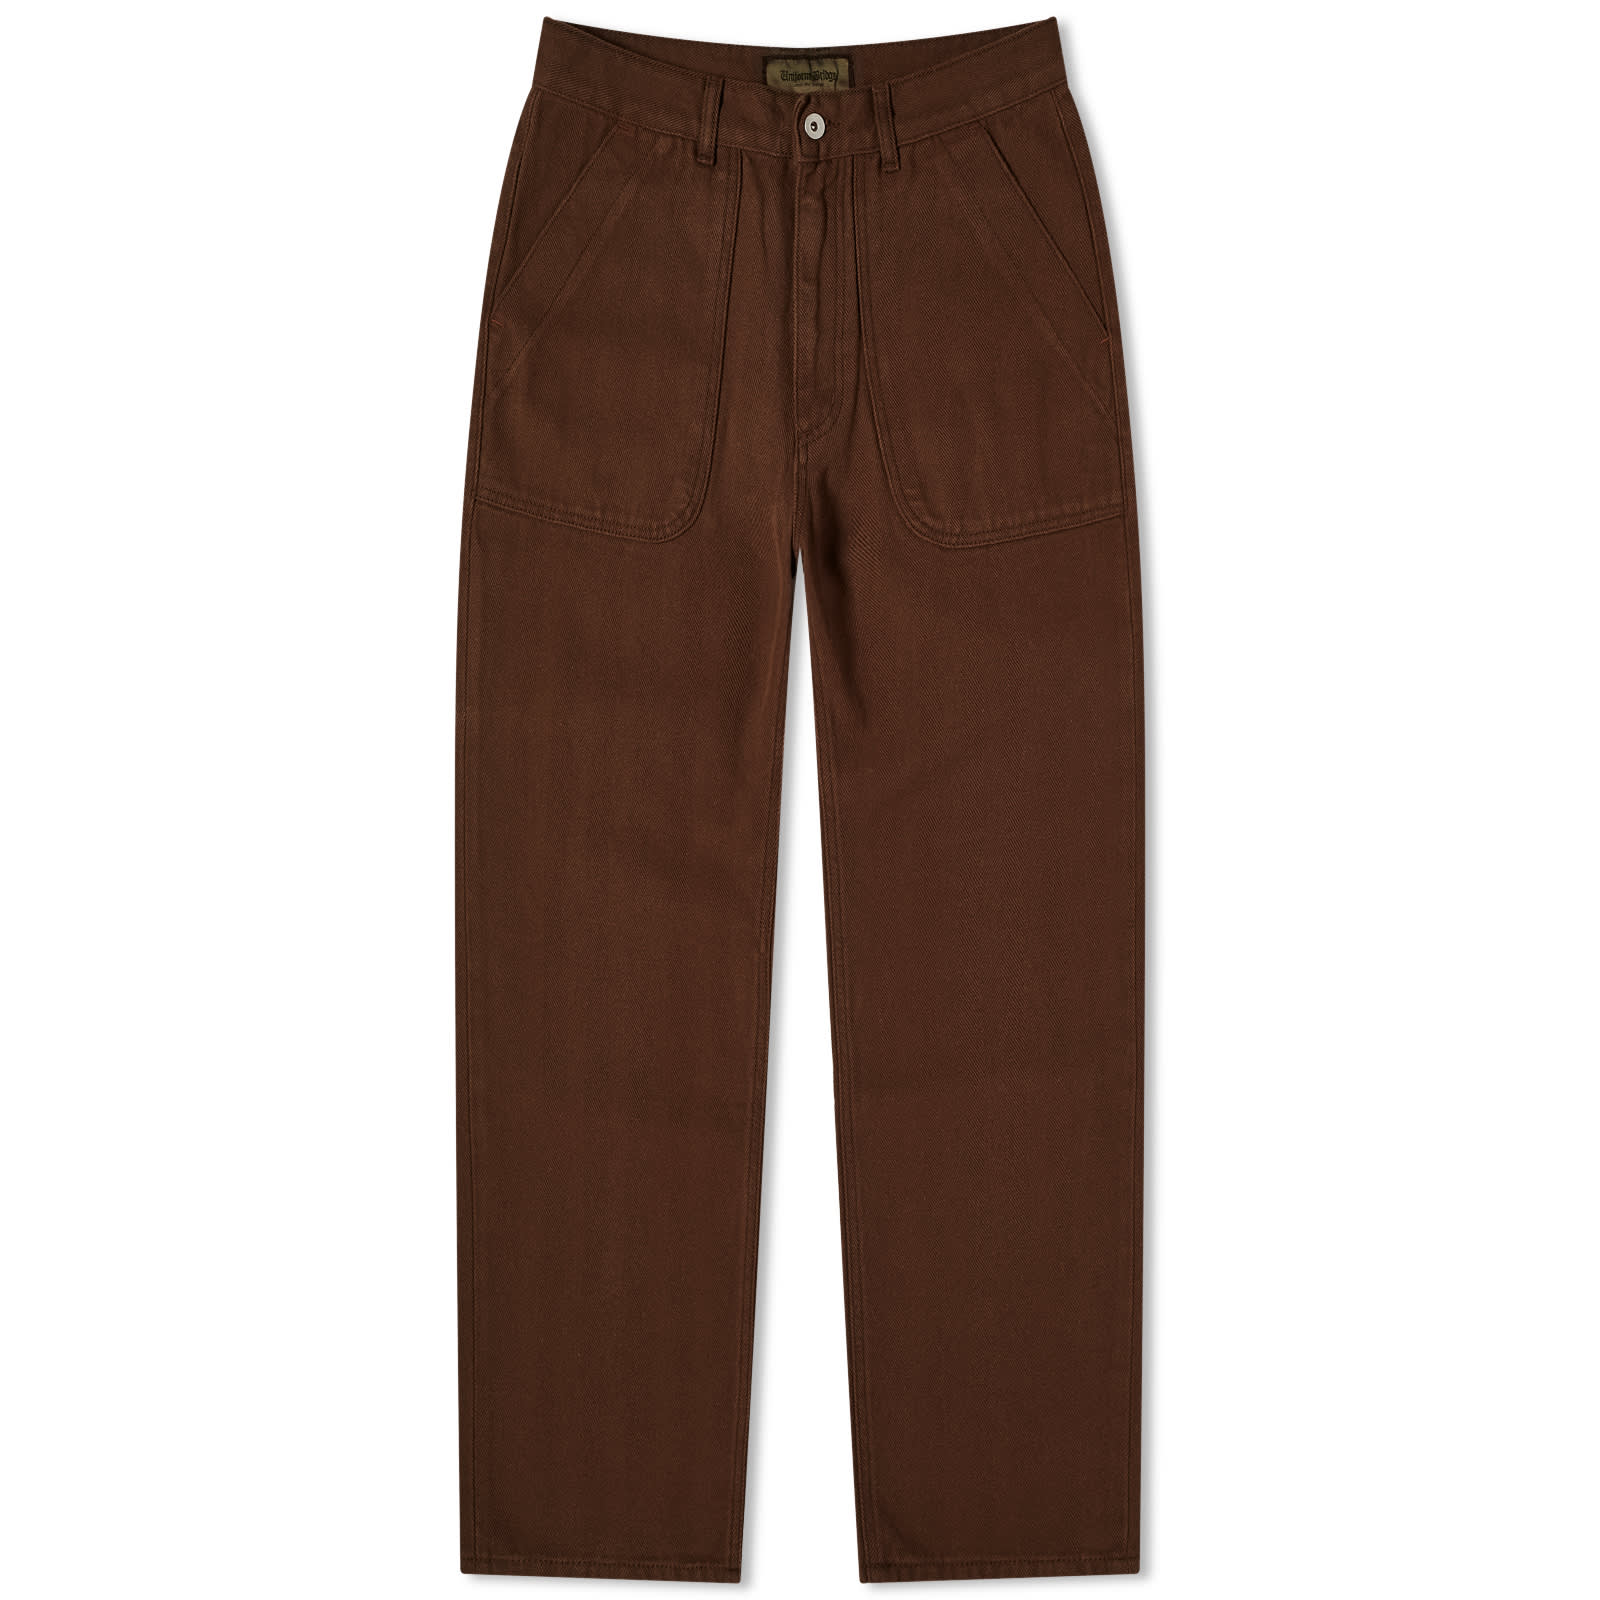 Брюки Uniform Bridge Hbt Deck, коричневый брюки uniform bridge размер s коричневый